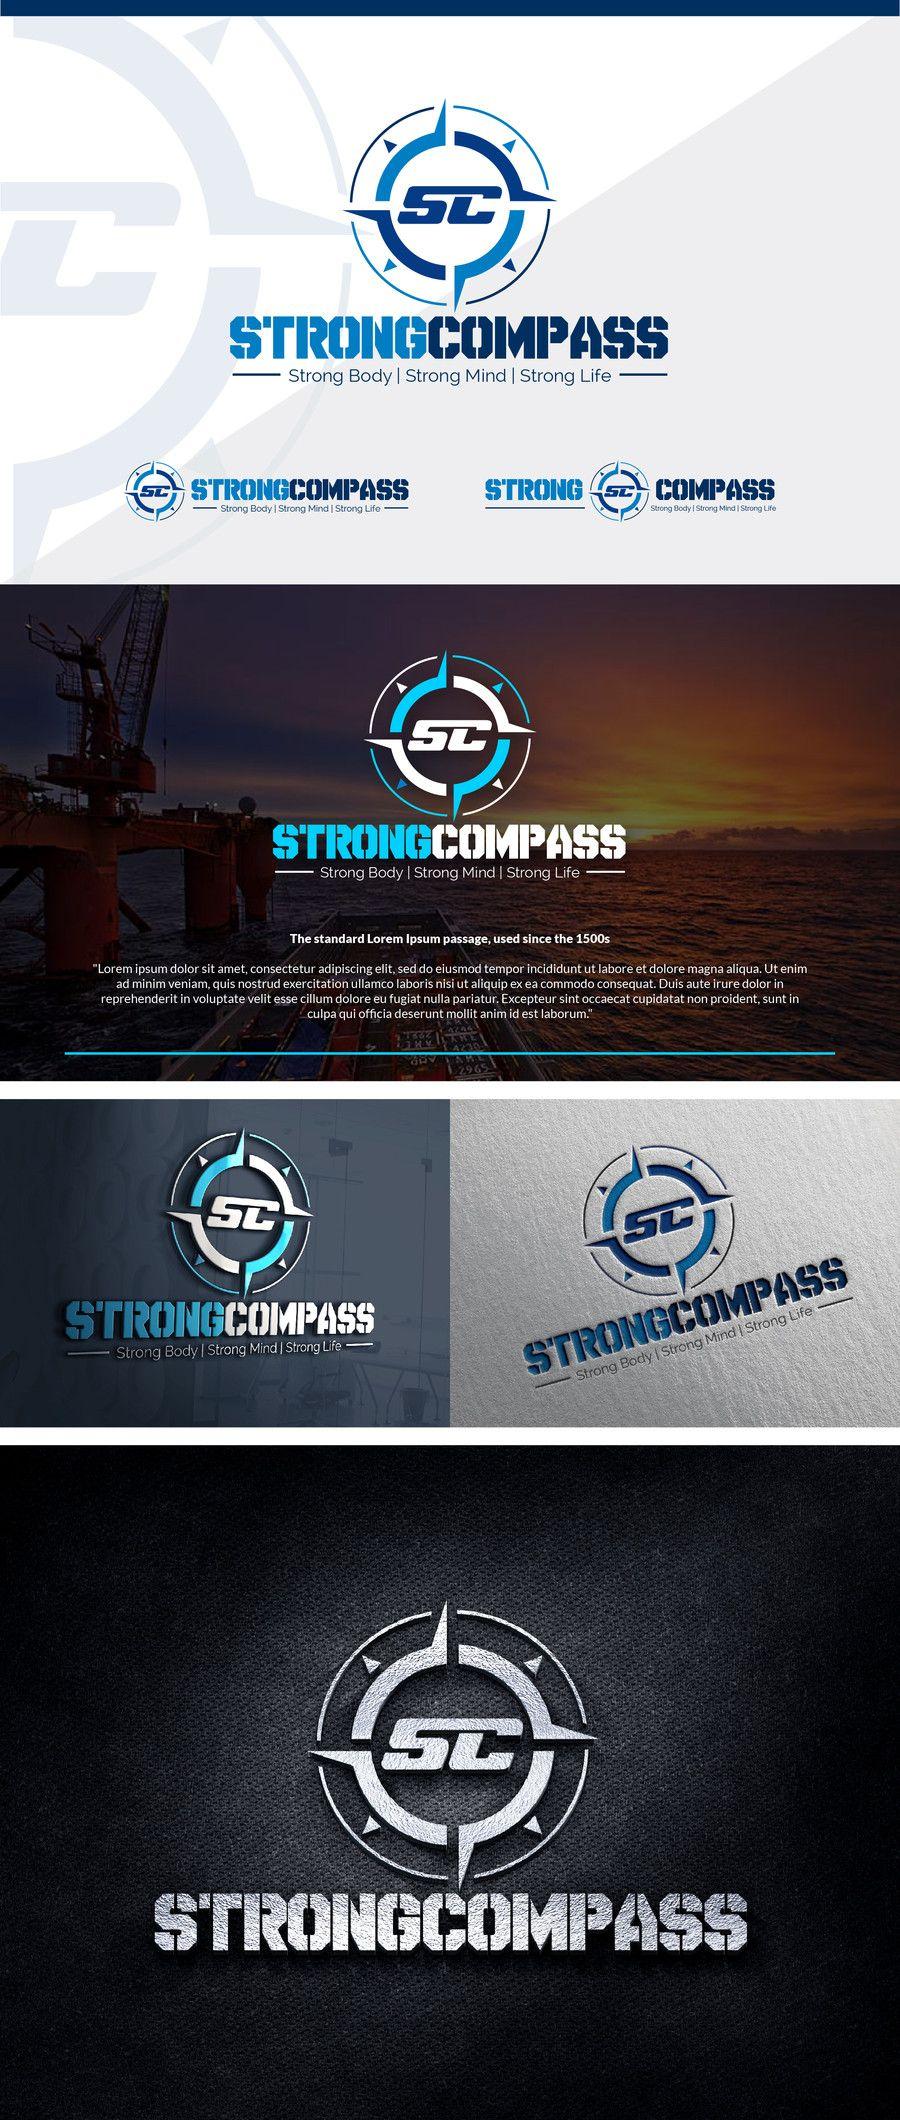 Strong Body Logo - Entry #48 by creativesolutanz for Design a Logo for Strong Compass ...